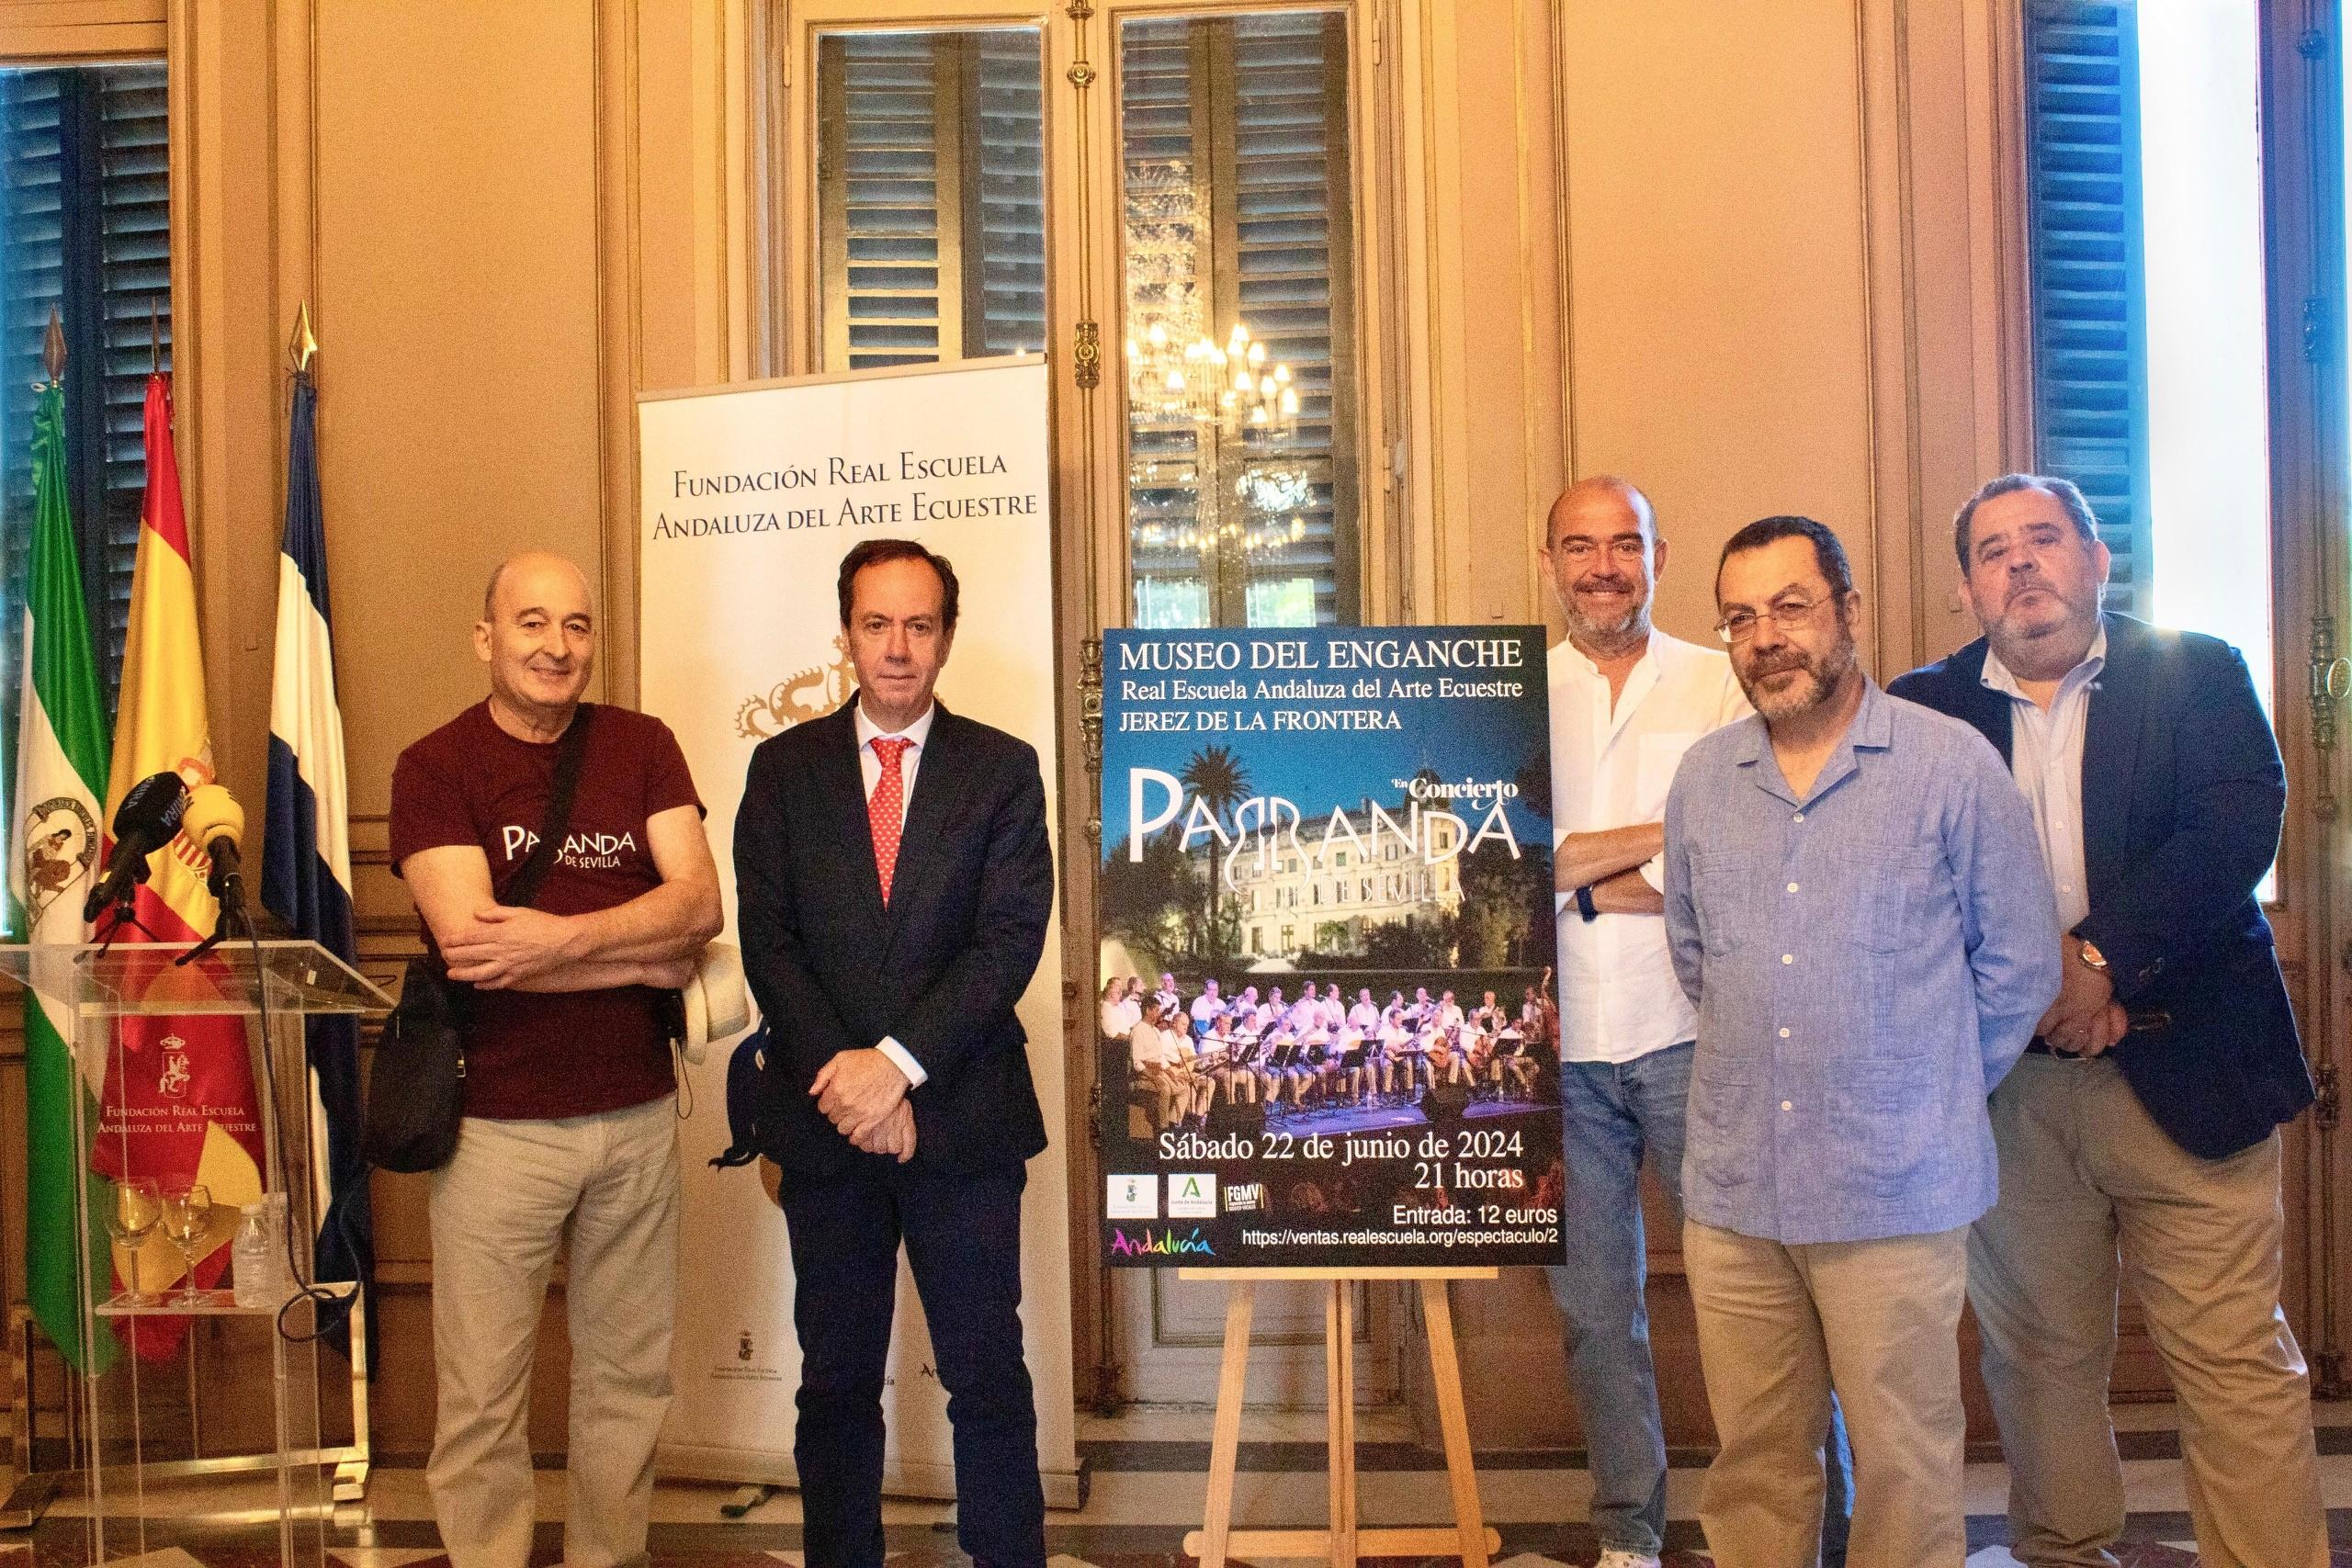 La Real Escuela Andaluza del Arte Ecuestre en Jerez acogerá un concierto de La Parranda de Sevilla